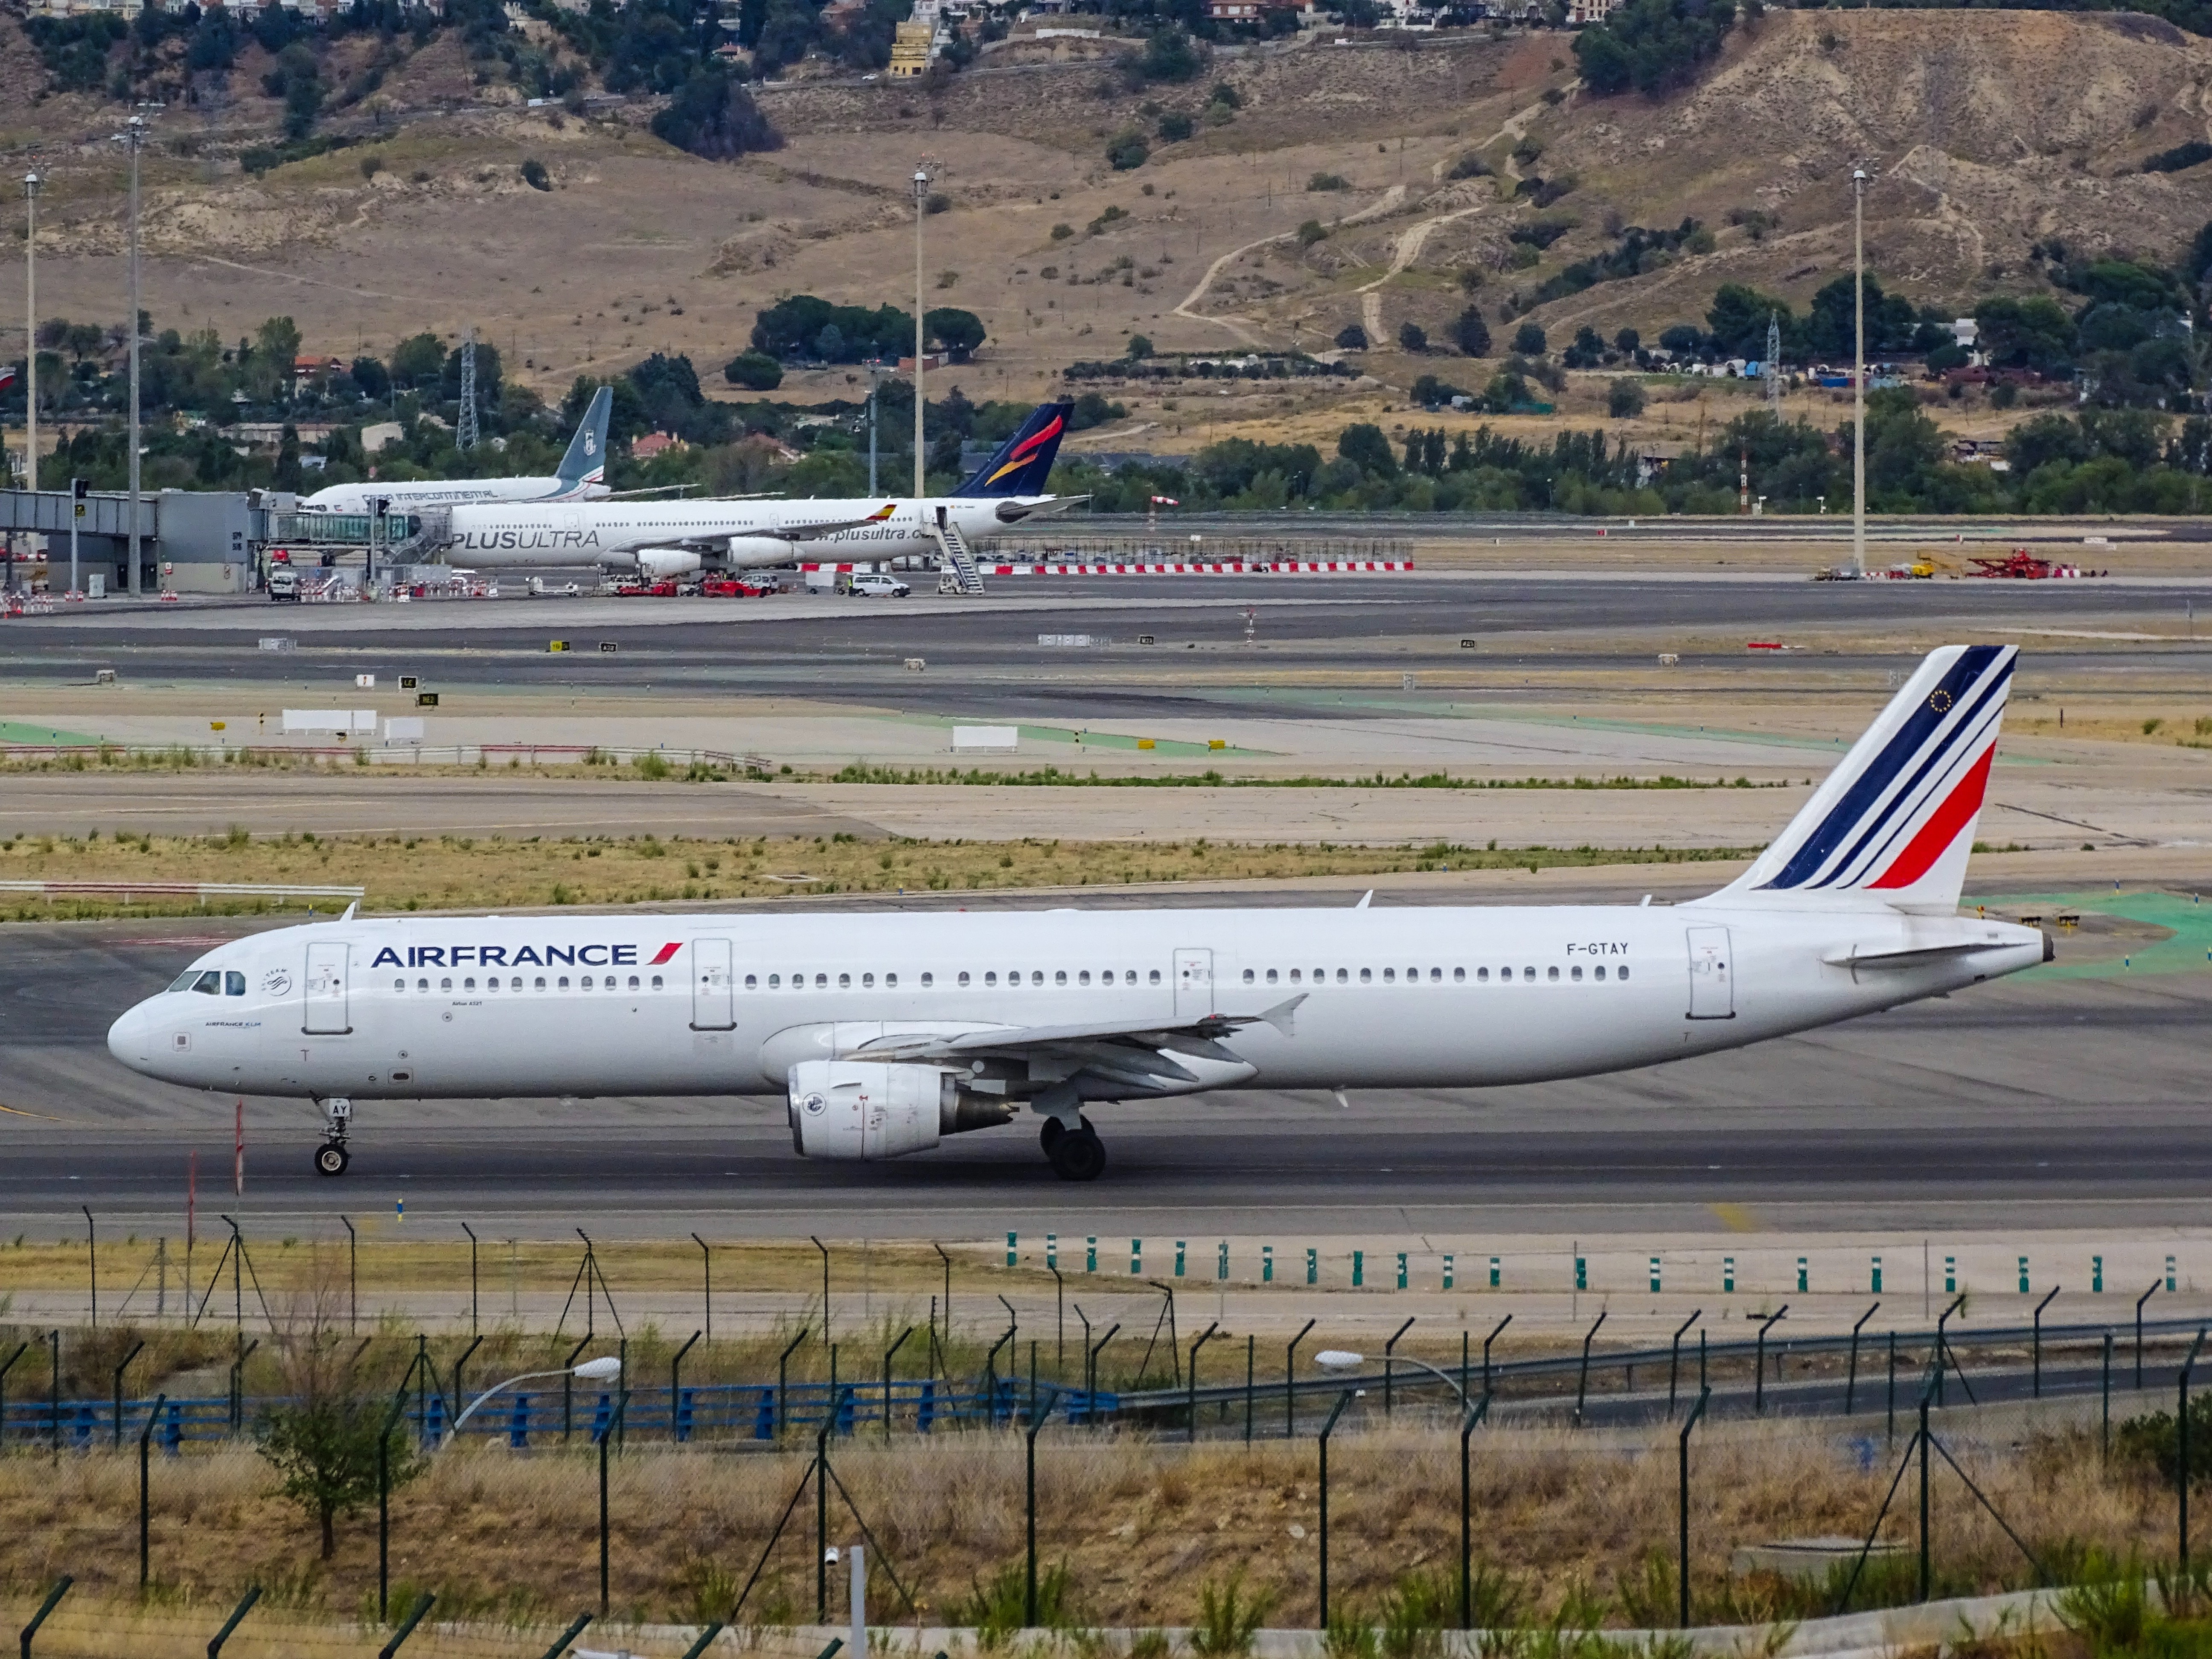 Air France : bagage perdu, que faire ? 